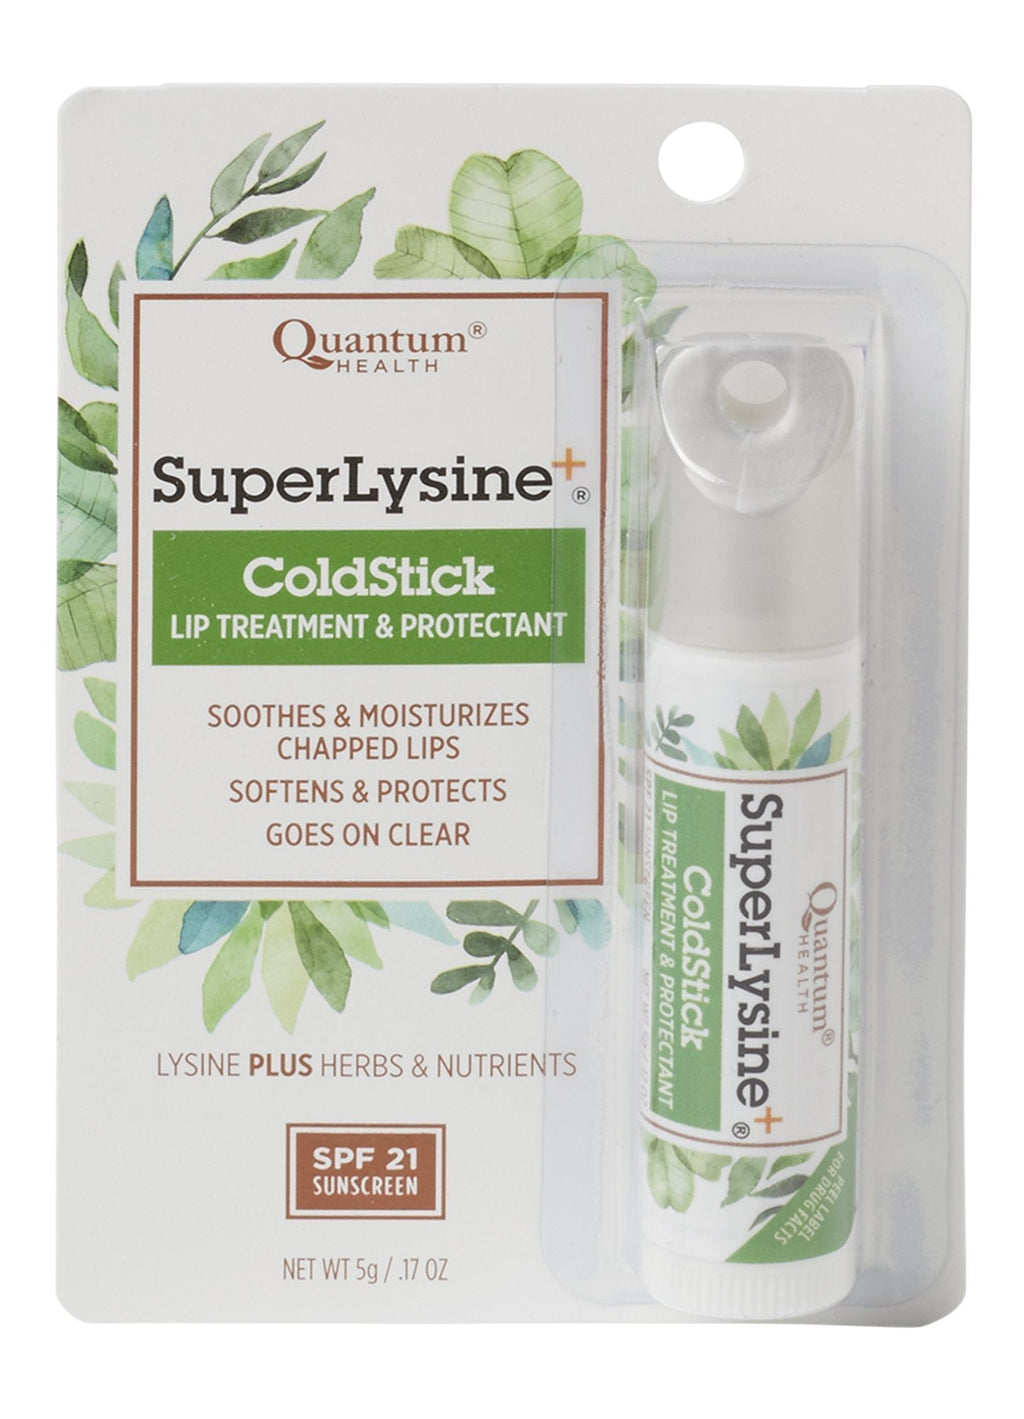 [Australia] - Super Lysine Plus Coldstick With SPF21 Quantum 1 Stick 1 Count (Pack of 1) 